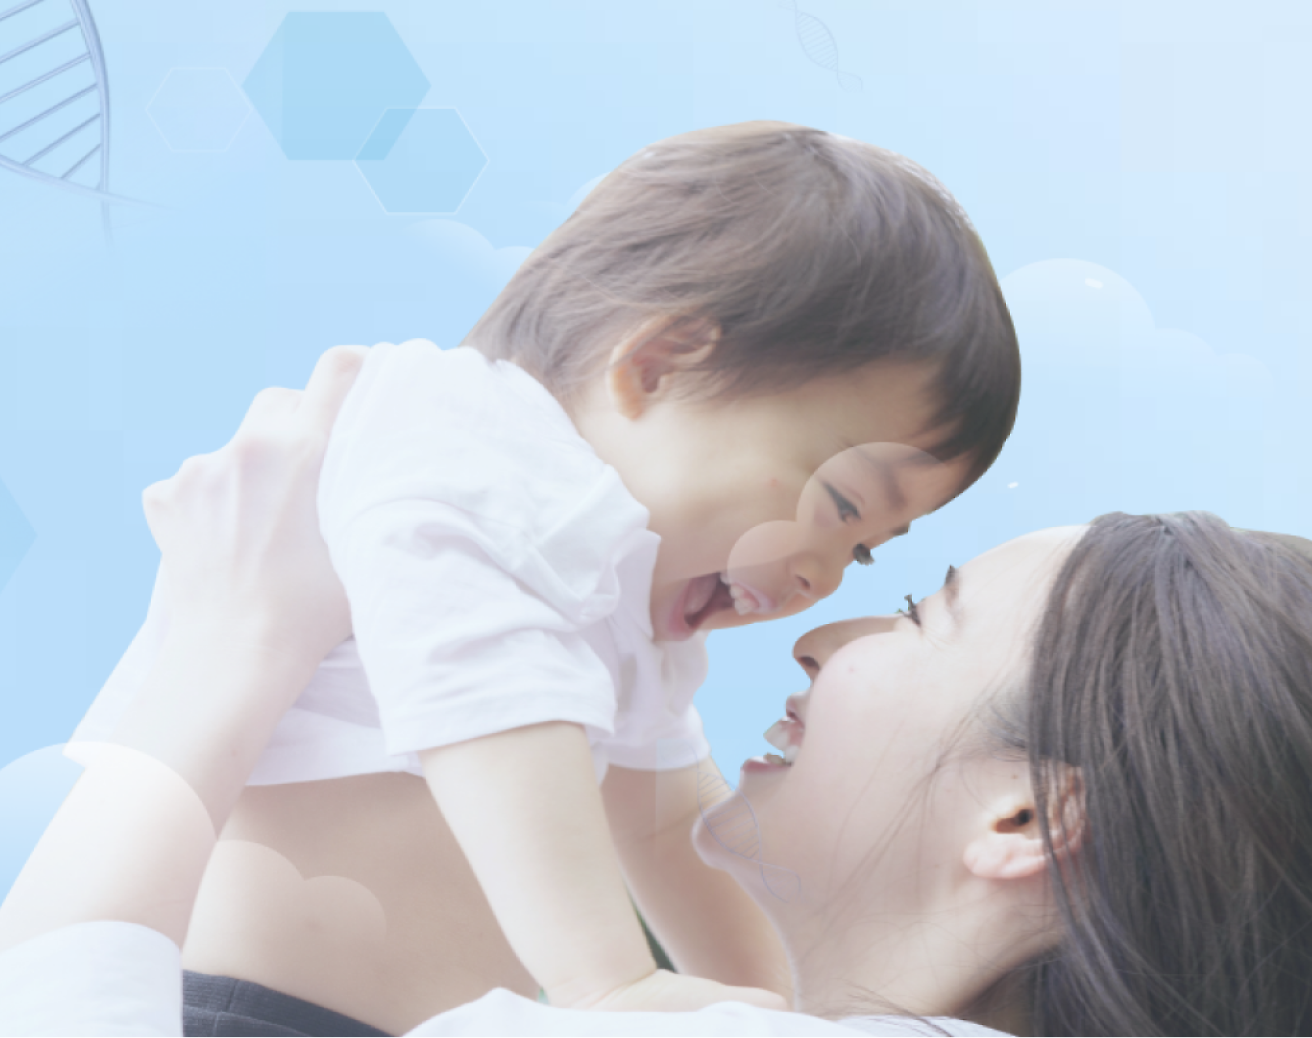 Мать держит ребенка в воздухе и оба улыбаются, на мягко-синем фоне со светлой графикой.